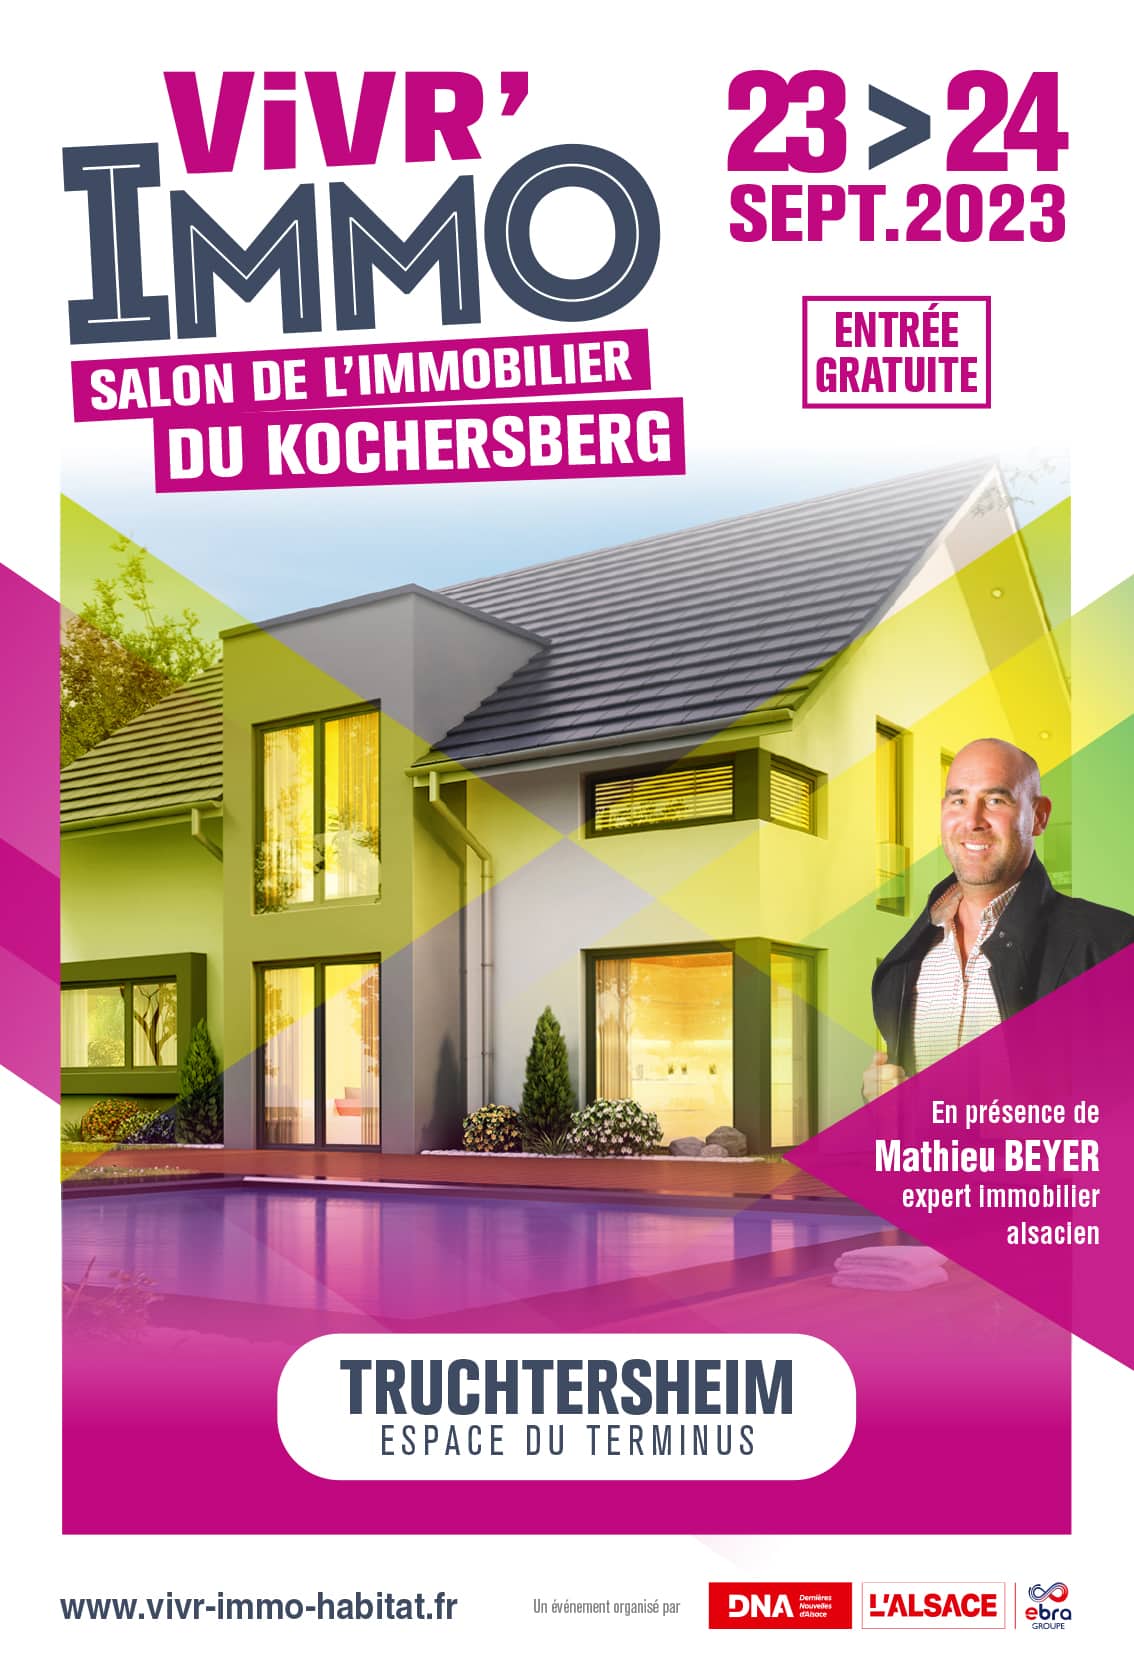 Vivr'Immo – Salon immobilier du Kochersberg de Truchtersheim